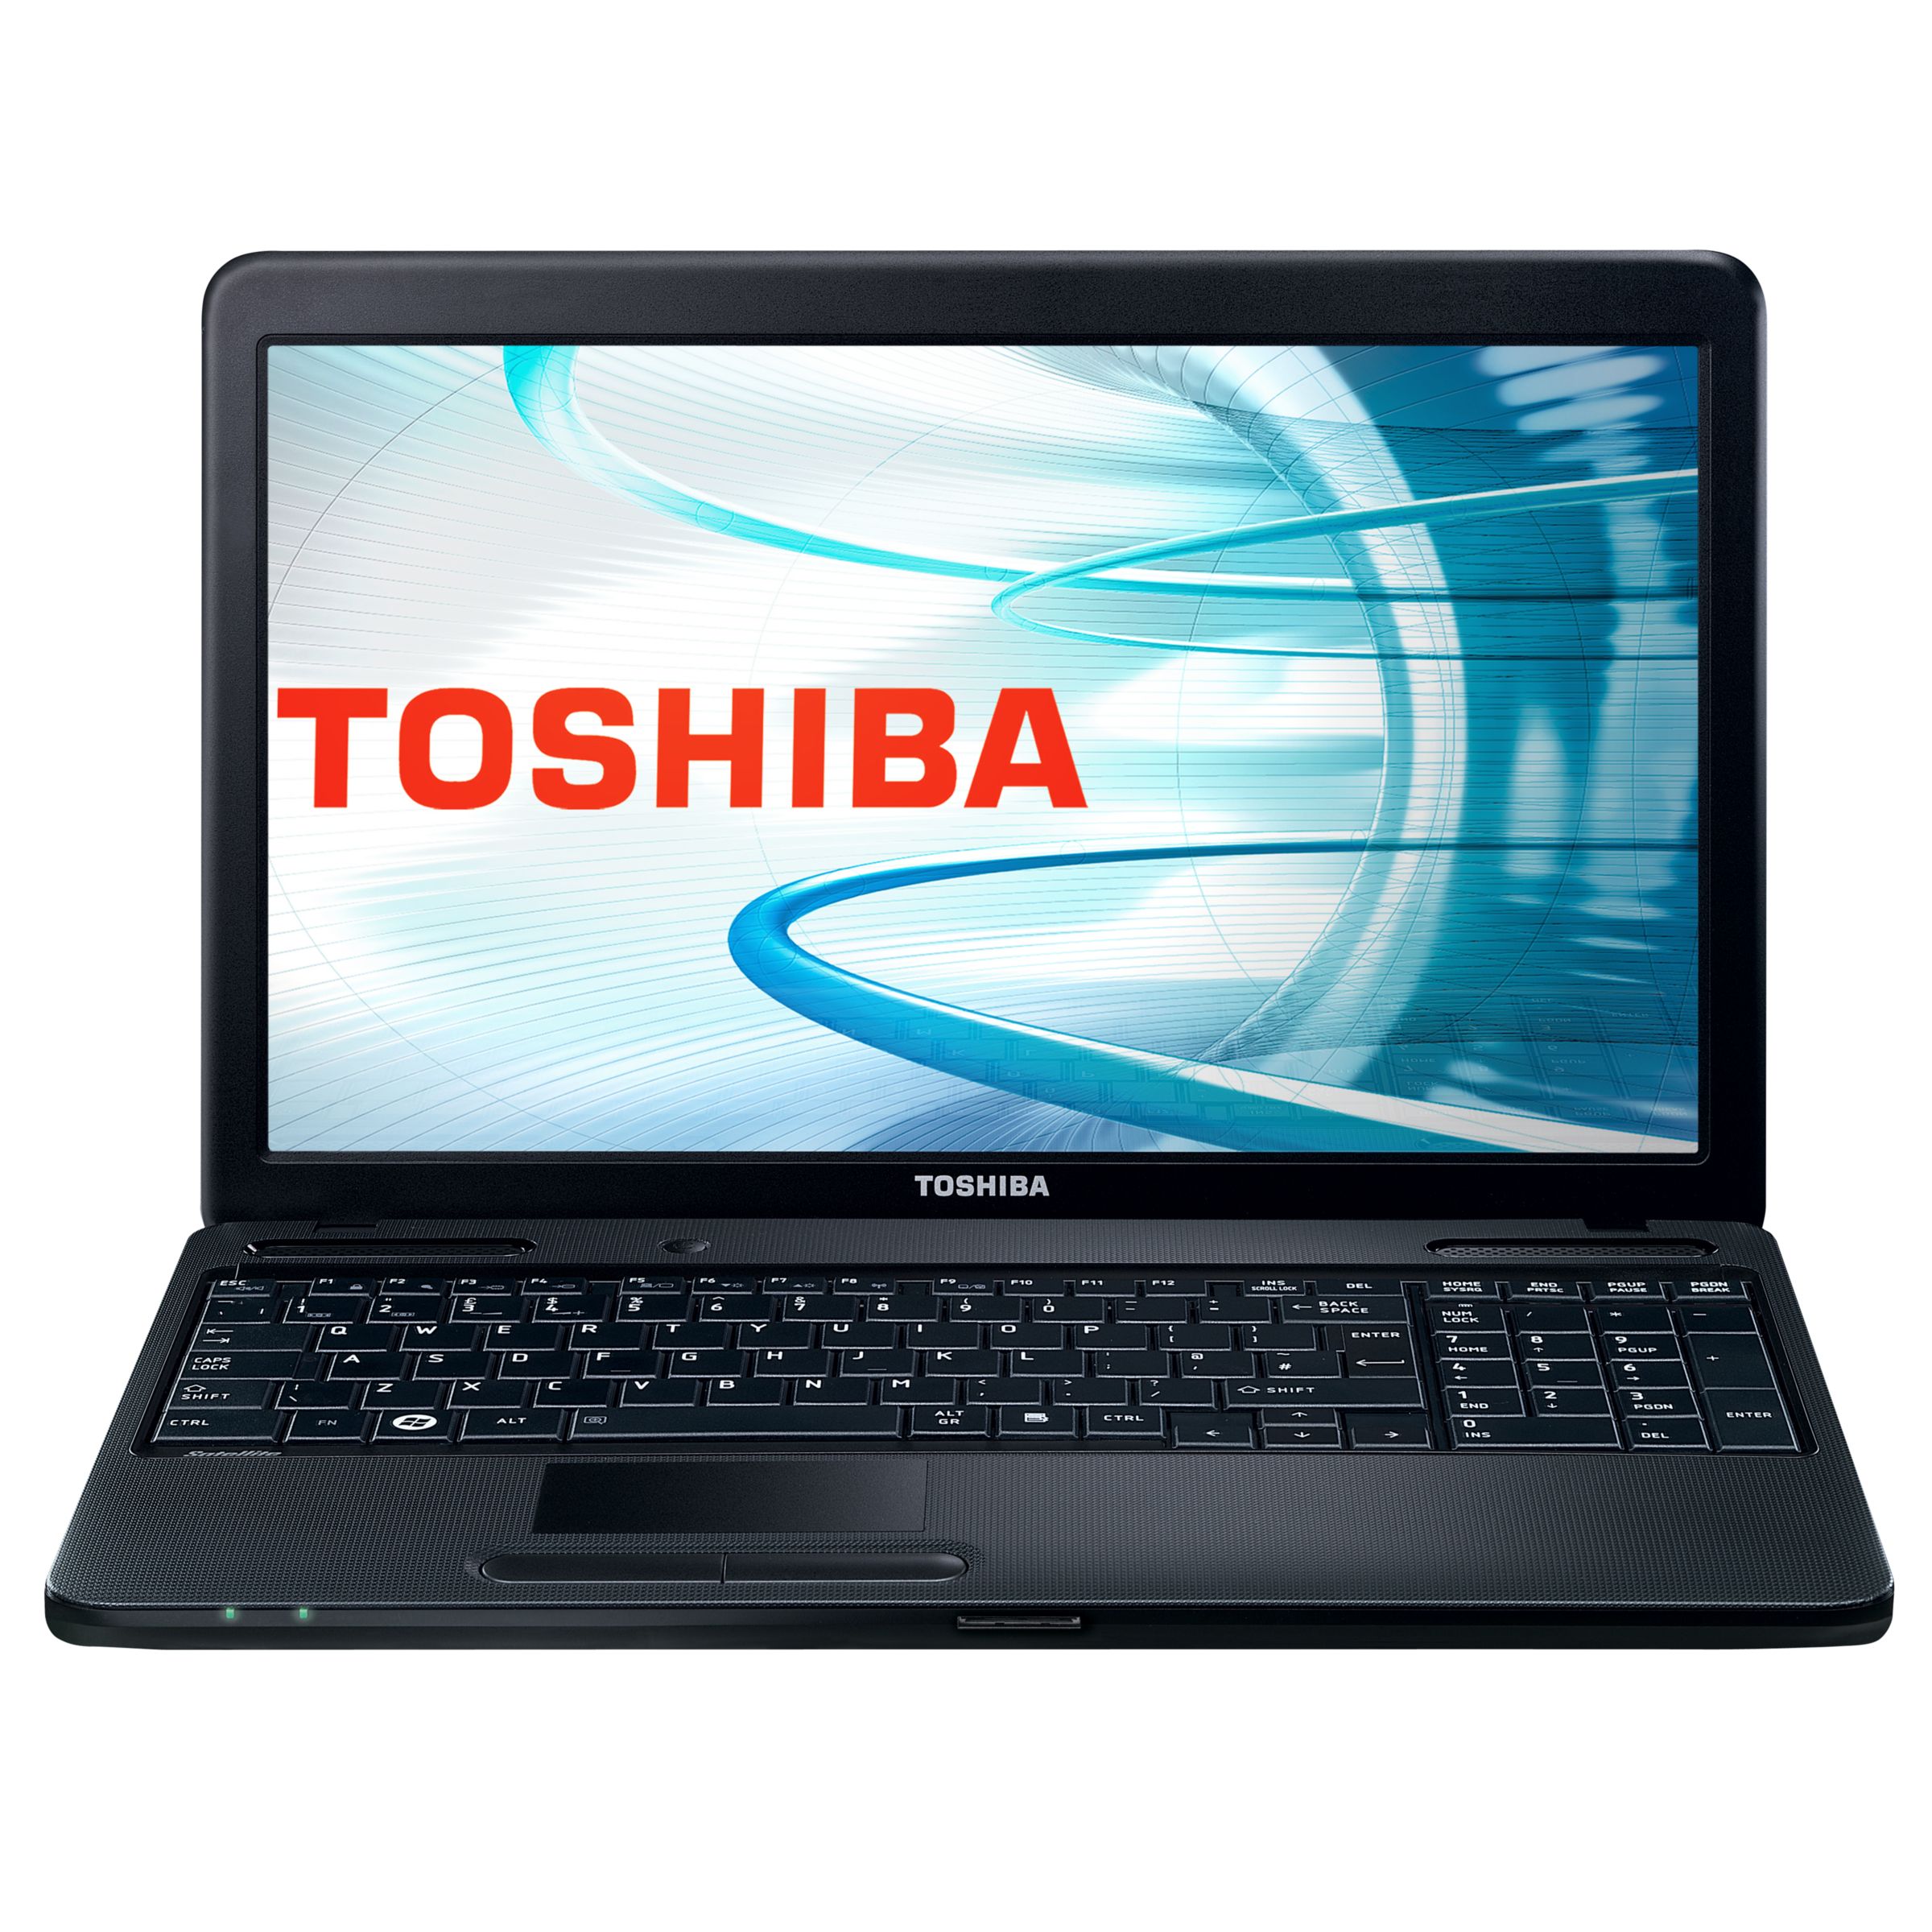 Toshiba Satellite C660-15 Laptop, Intel Celeron Dual, 320GB, 2.1GHz, 2GB RAM with 15.6 Inch Display at John Lewis